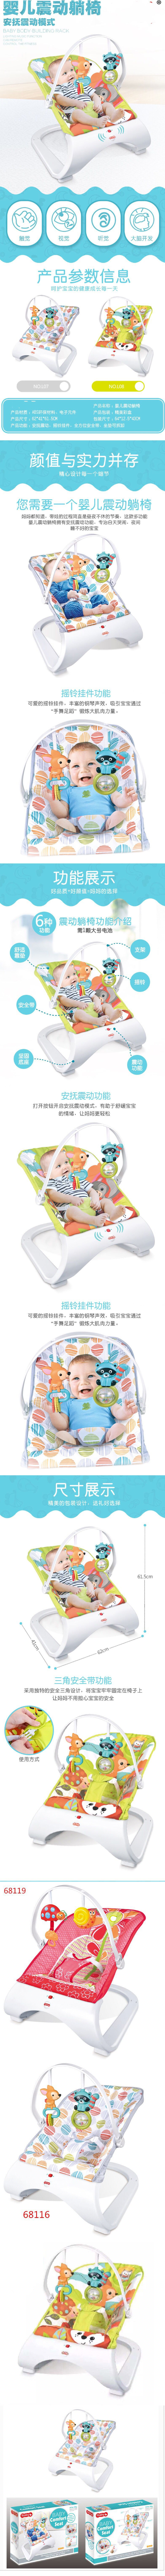 淘宝美工小童母婴产品  儿童椅作品